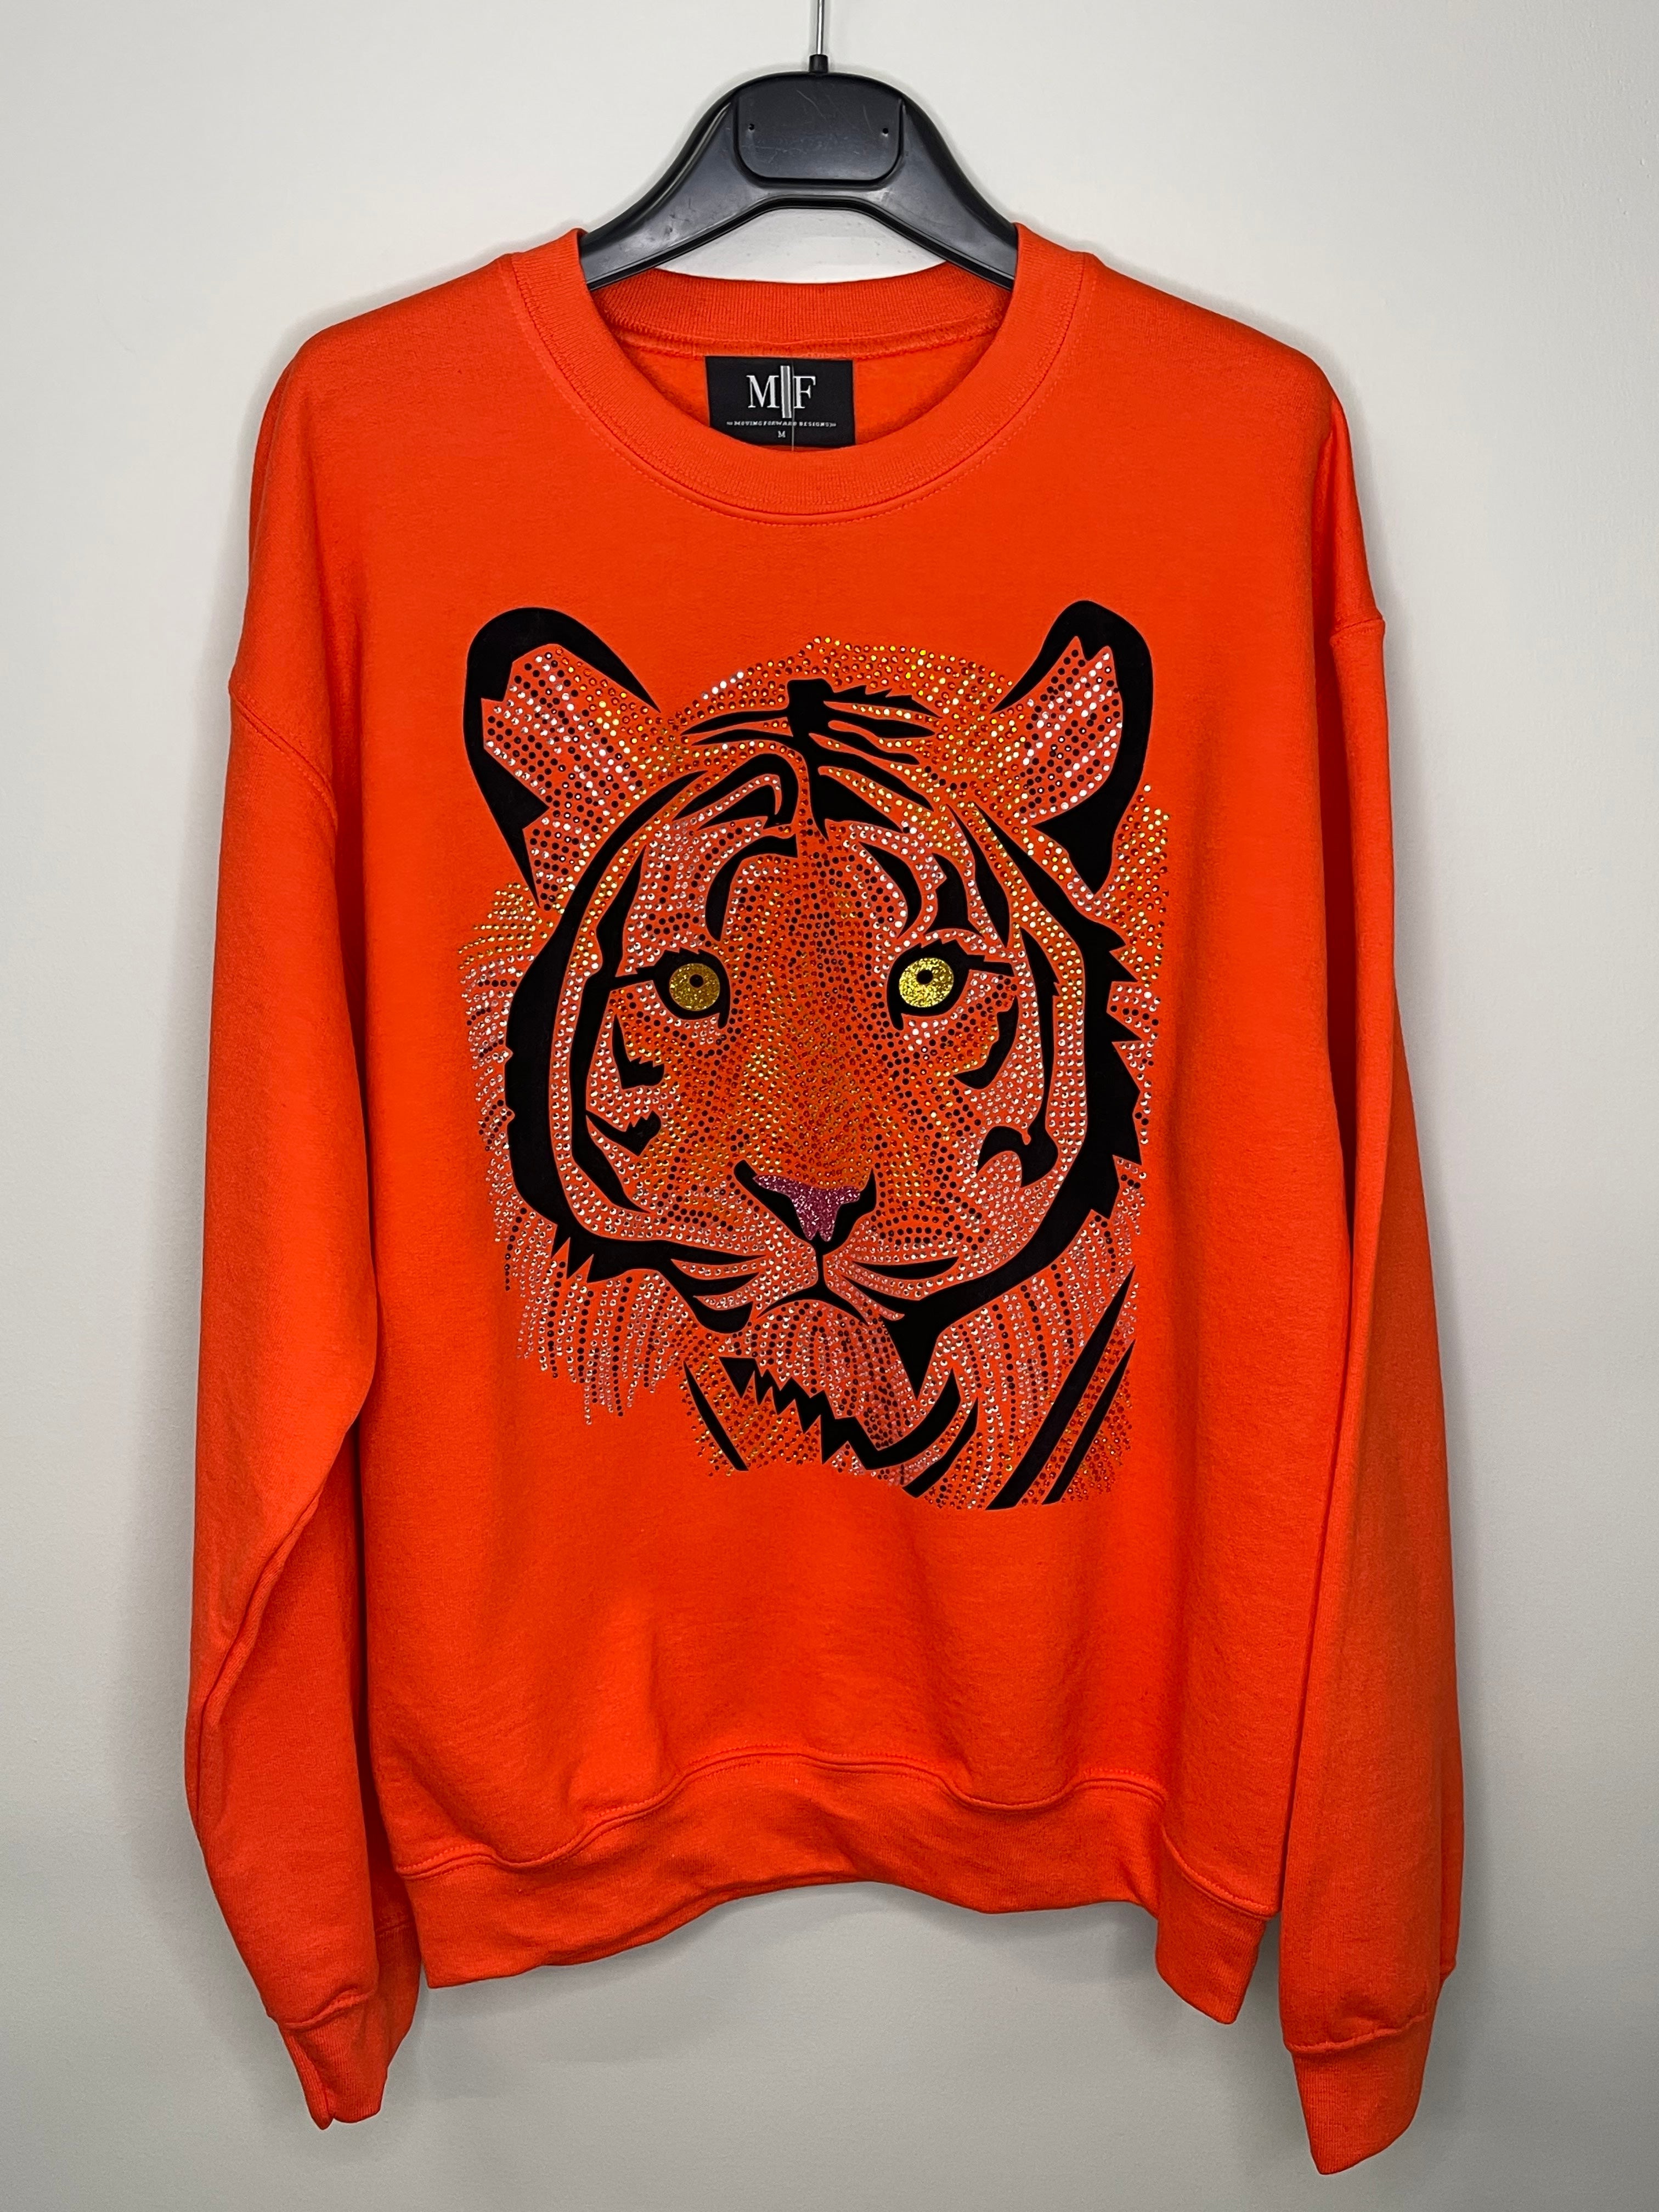 Sweatshirt, Crewneck Orange, Tiger Face